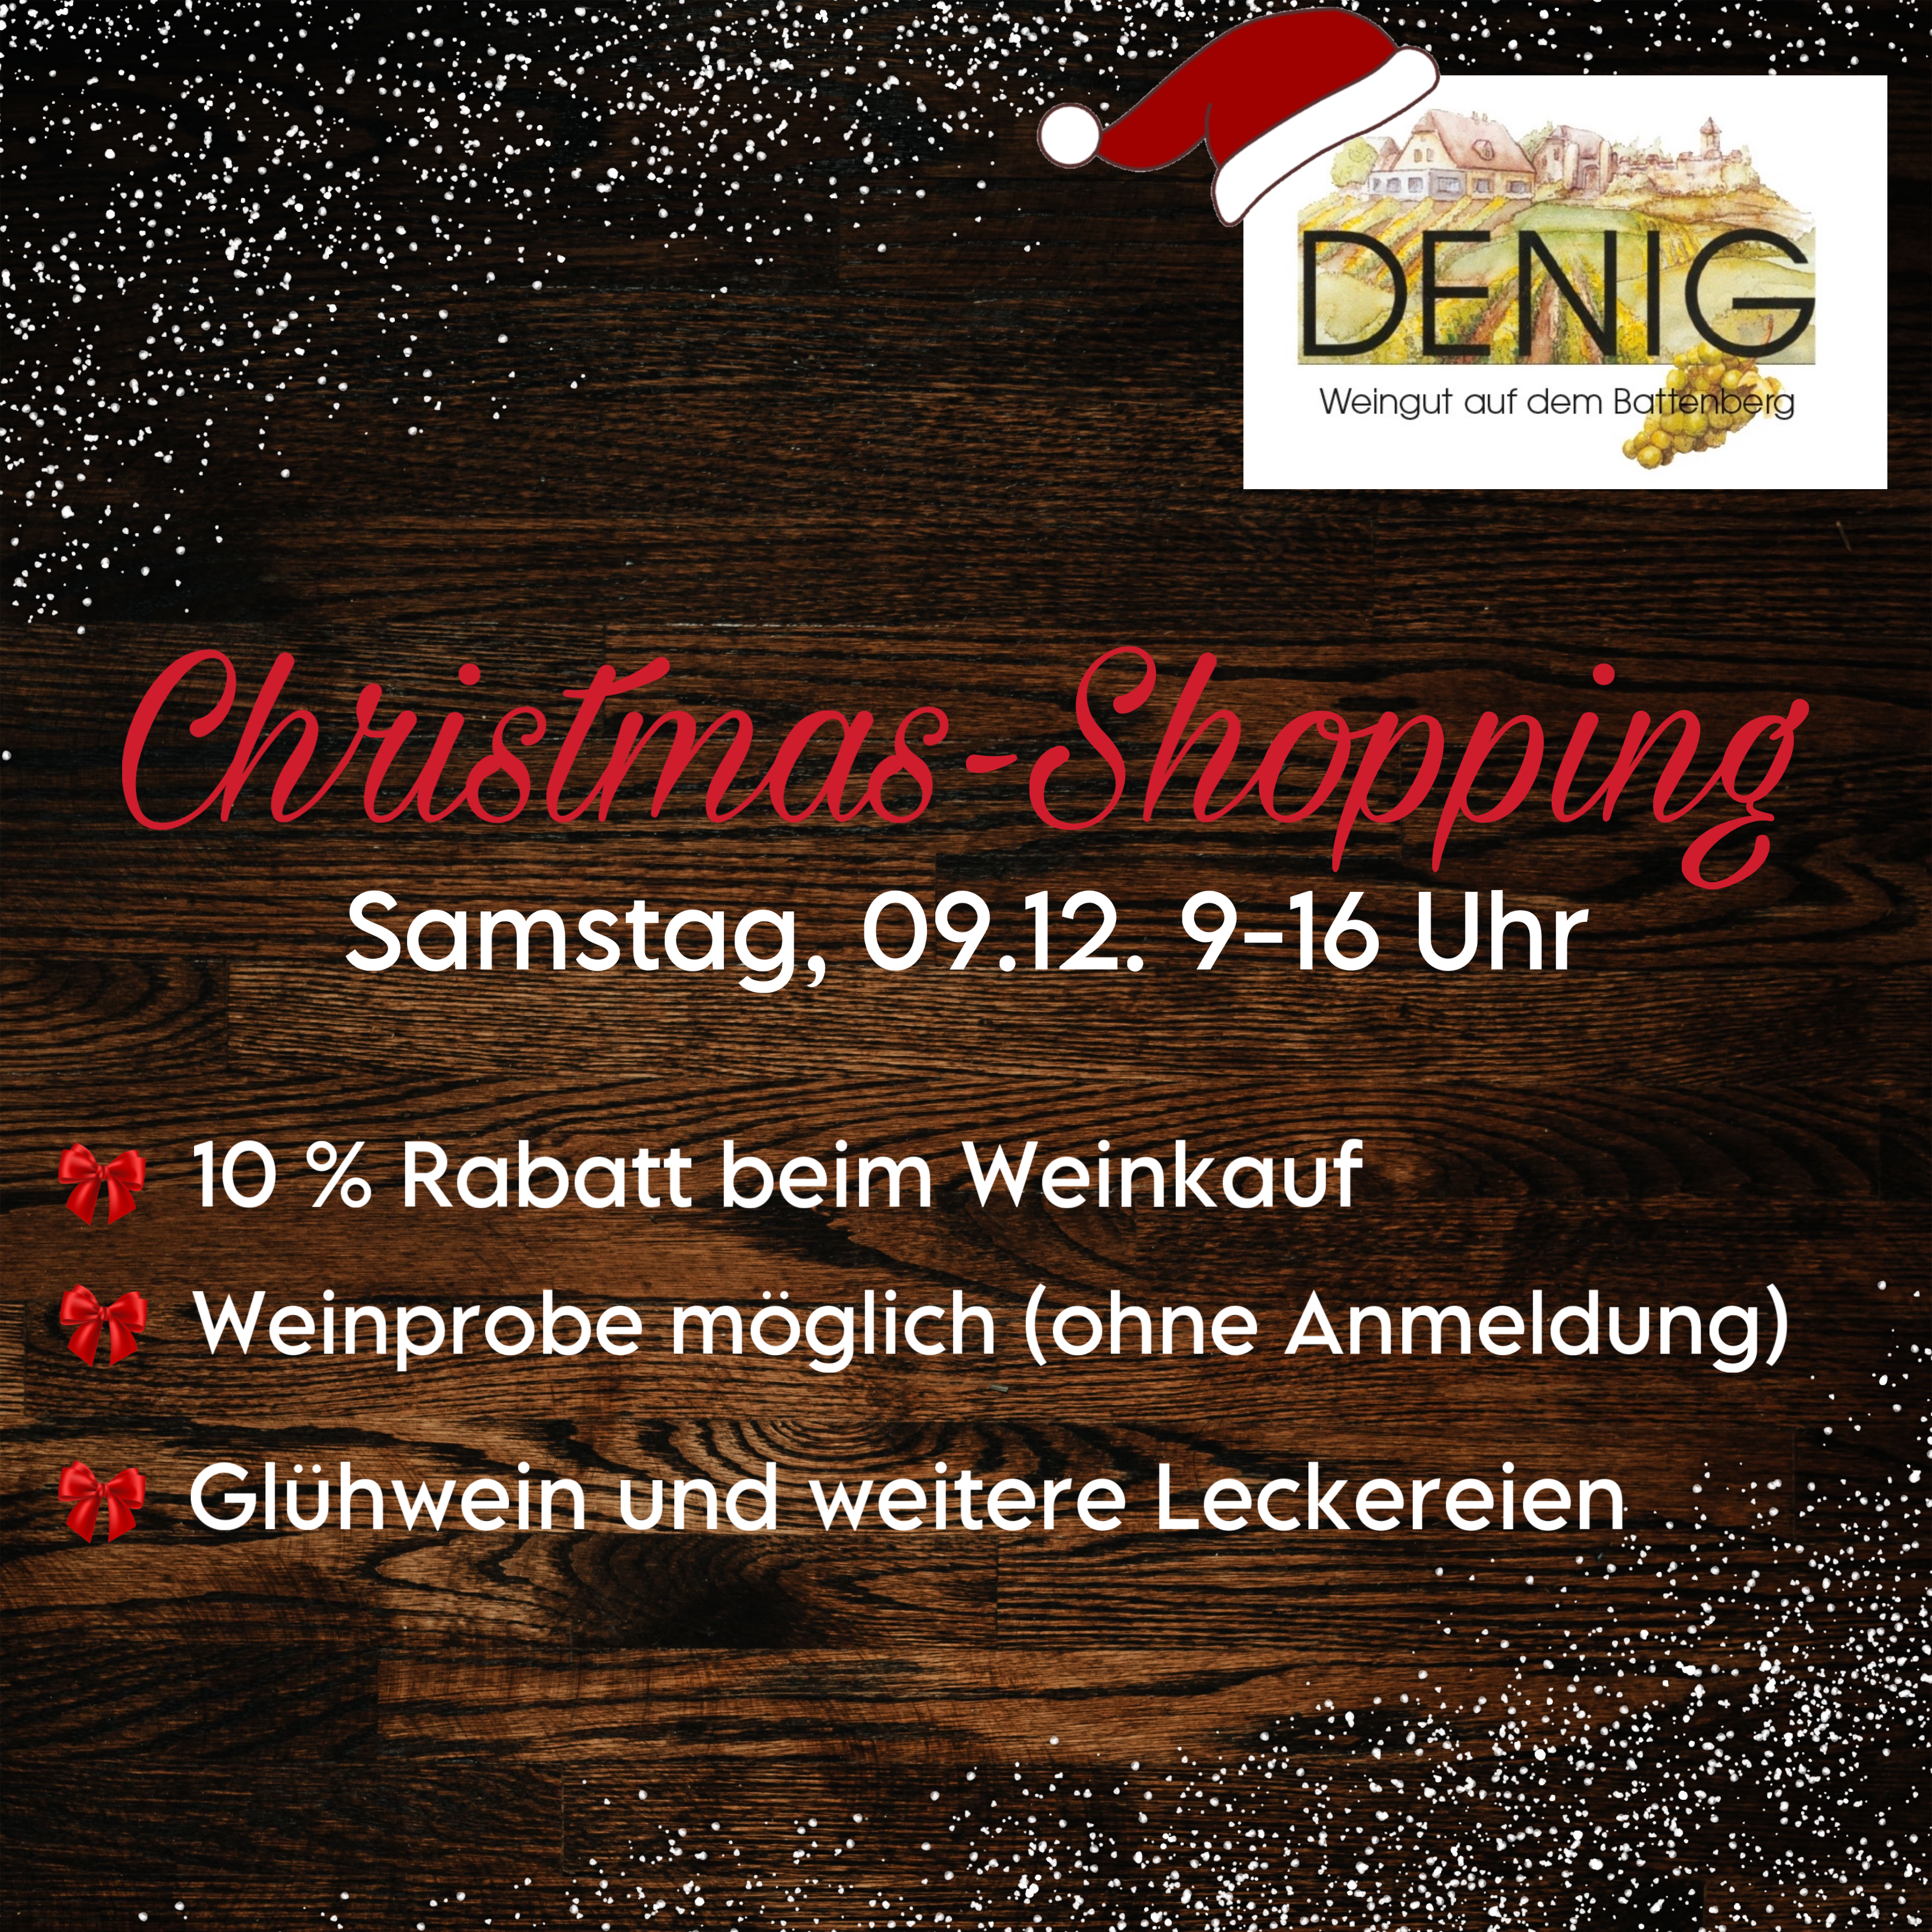 Christmas-Shopping am Samstag, 09.12., von 9 bis 16 Uhr, 10% Rabatt beim Weinkauf, Weinprobe möglich (ohne Anmeldung), Glühwein und weitere Leckereien